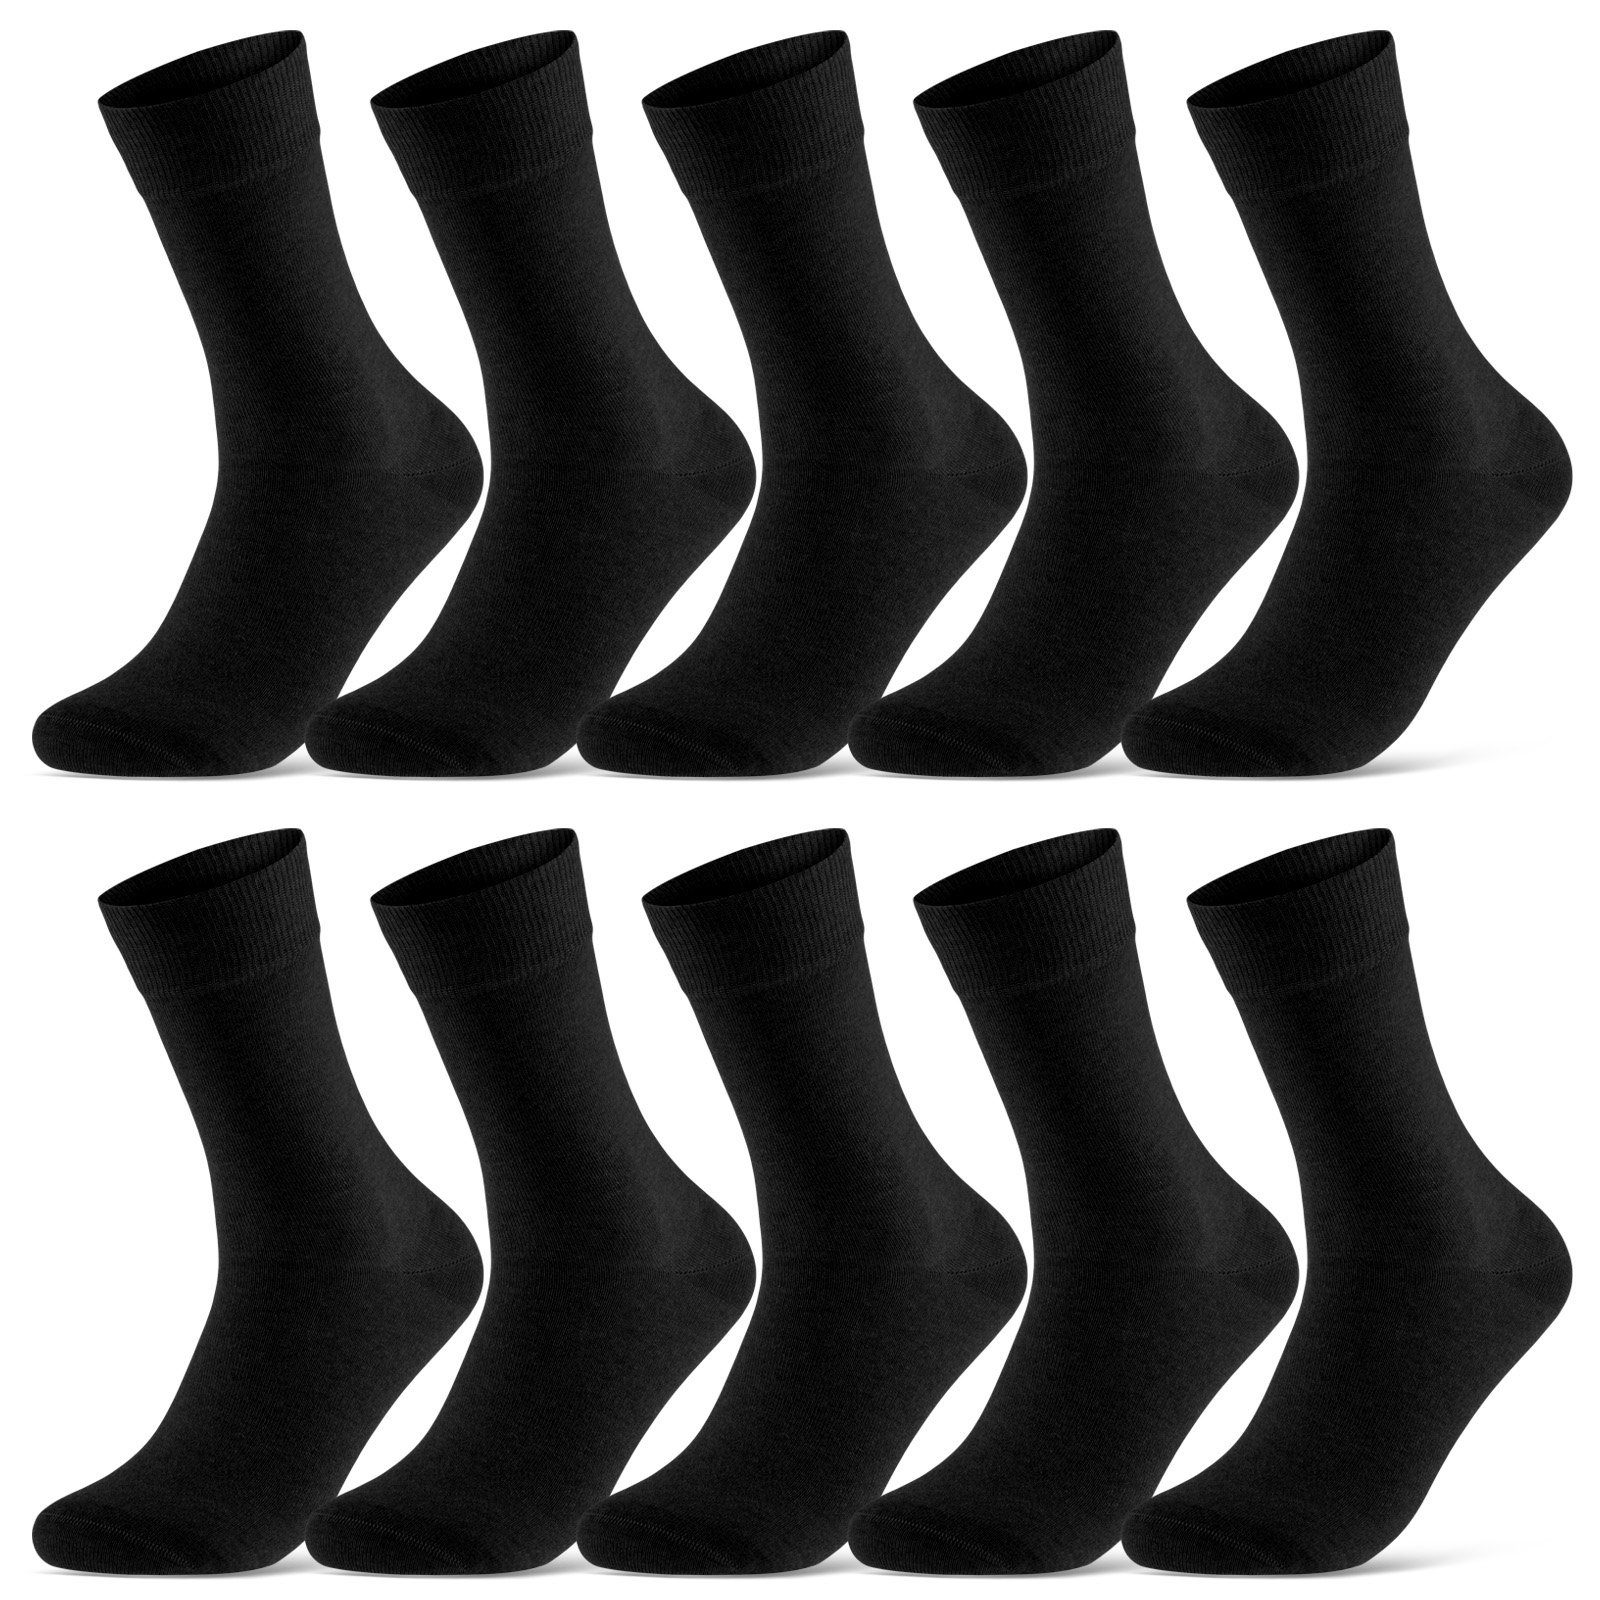 sockenkauf24 Socken 10 Paar Damen & Herren Socken Business Socken Baumwolle (Schwarz, 43-46) mit Komfortbund (Basicline) - 70201T